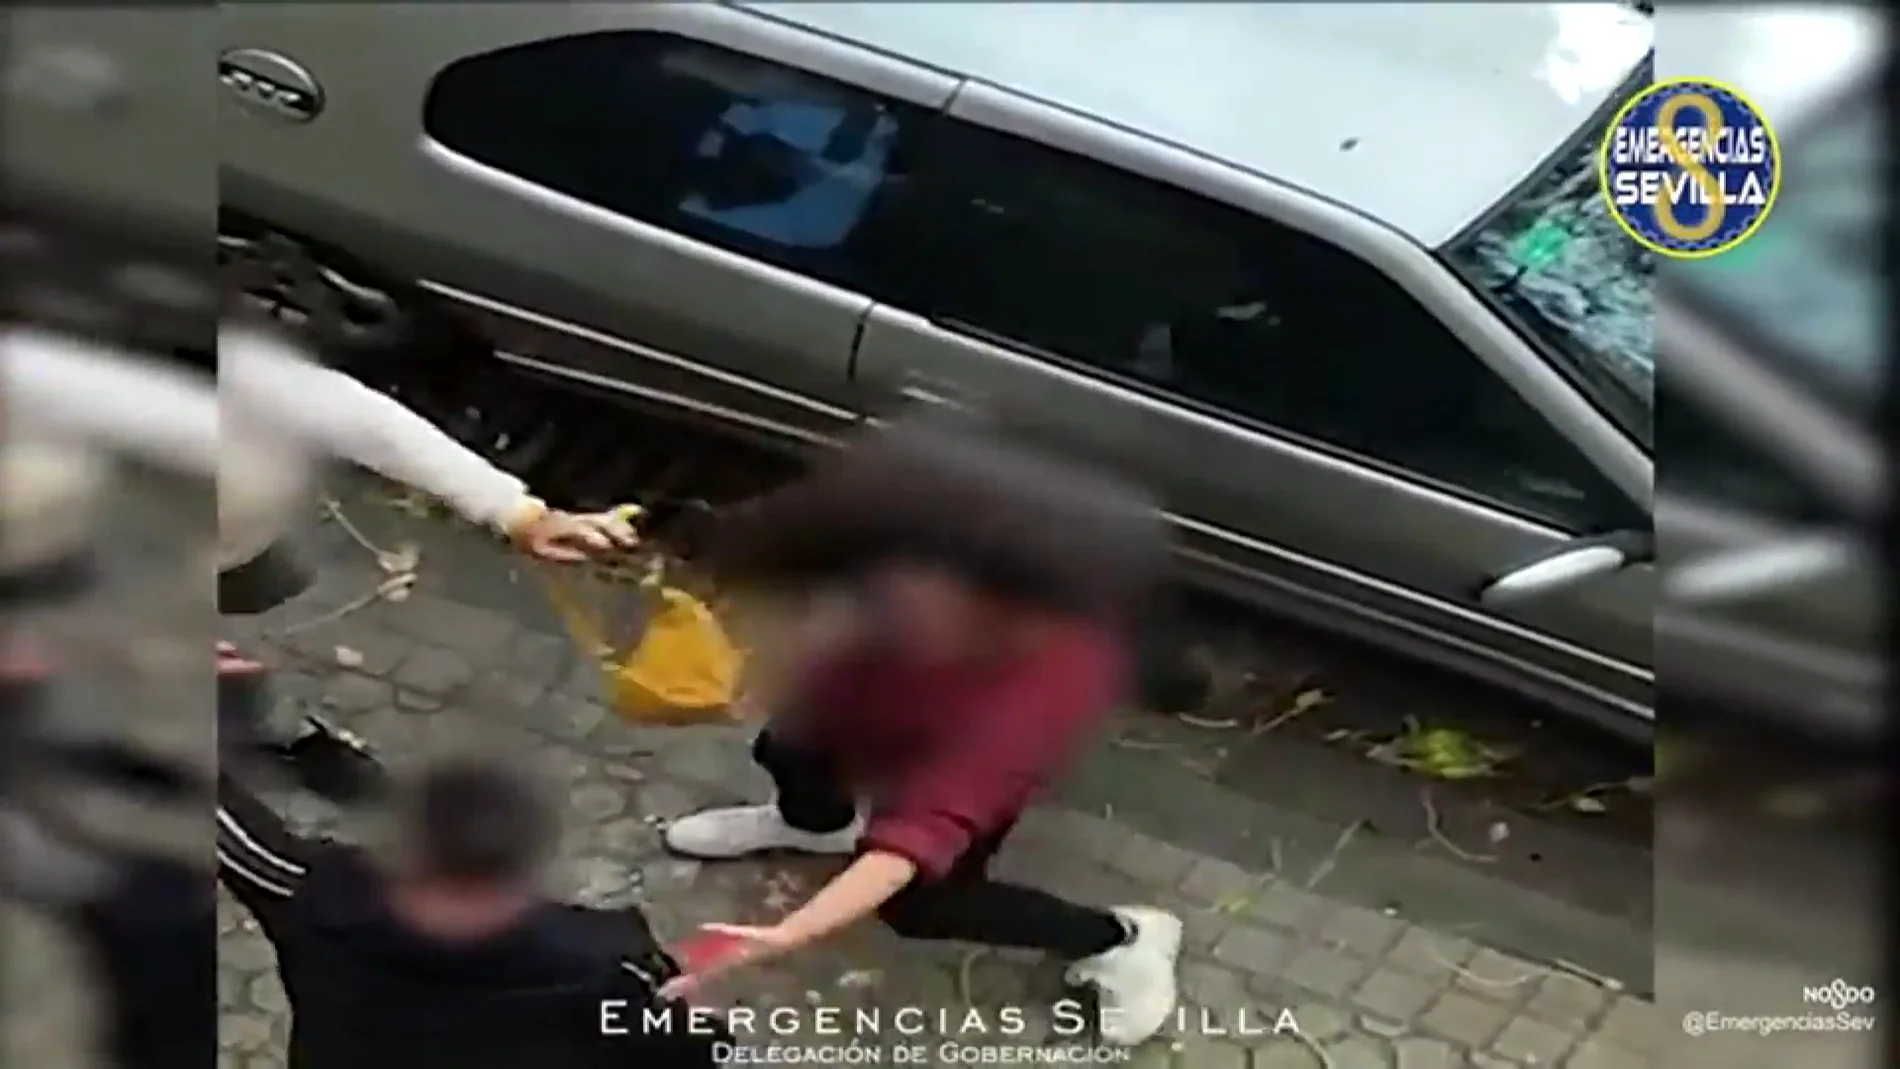 Entra en prisión una mujer por robar con violencia móviles en Sevilla